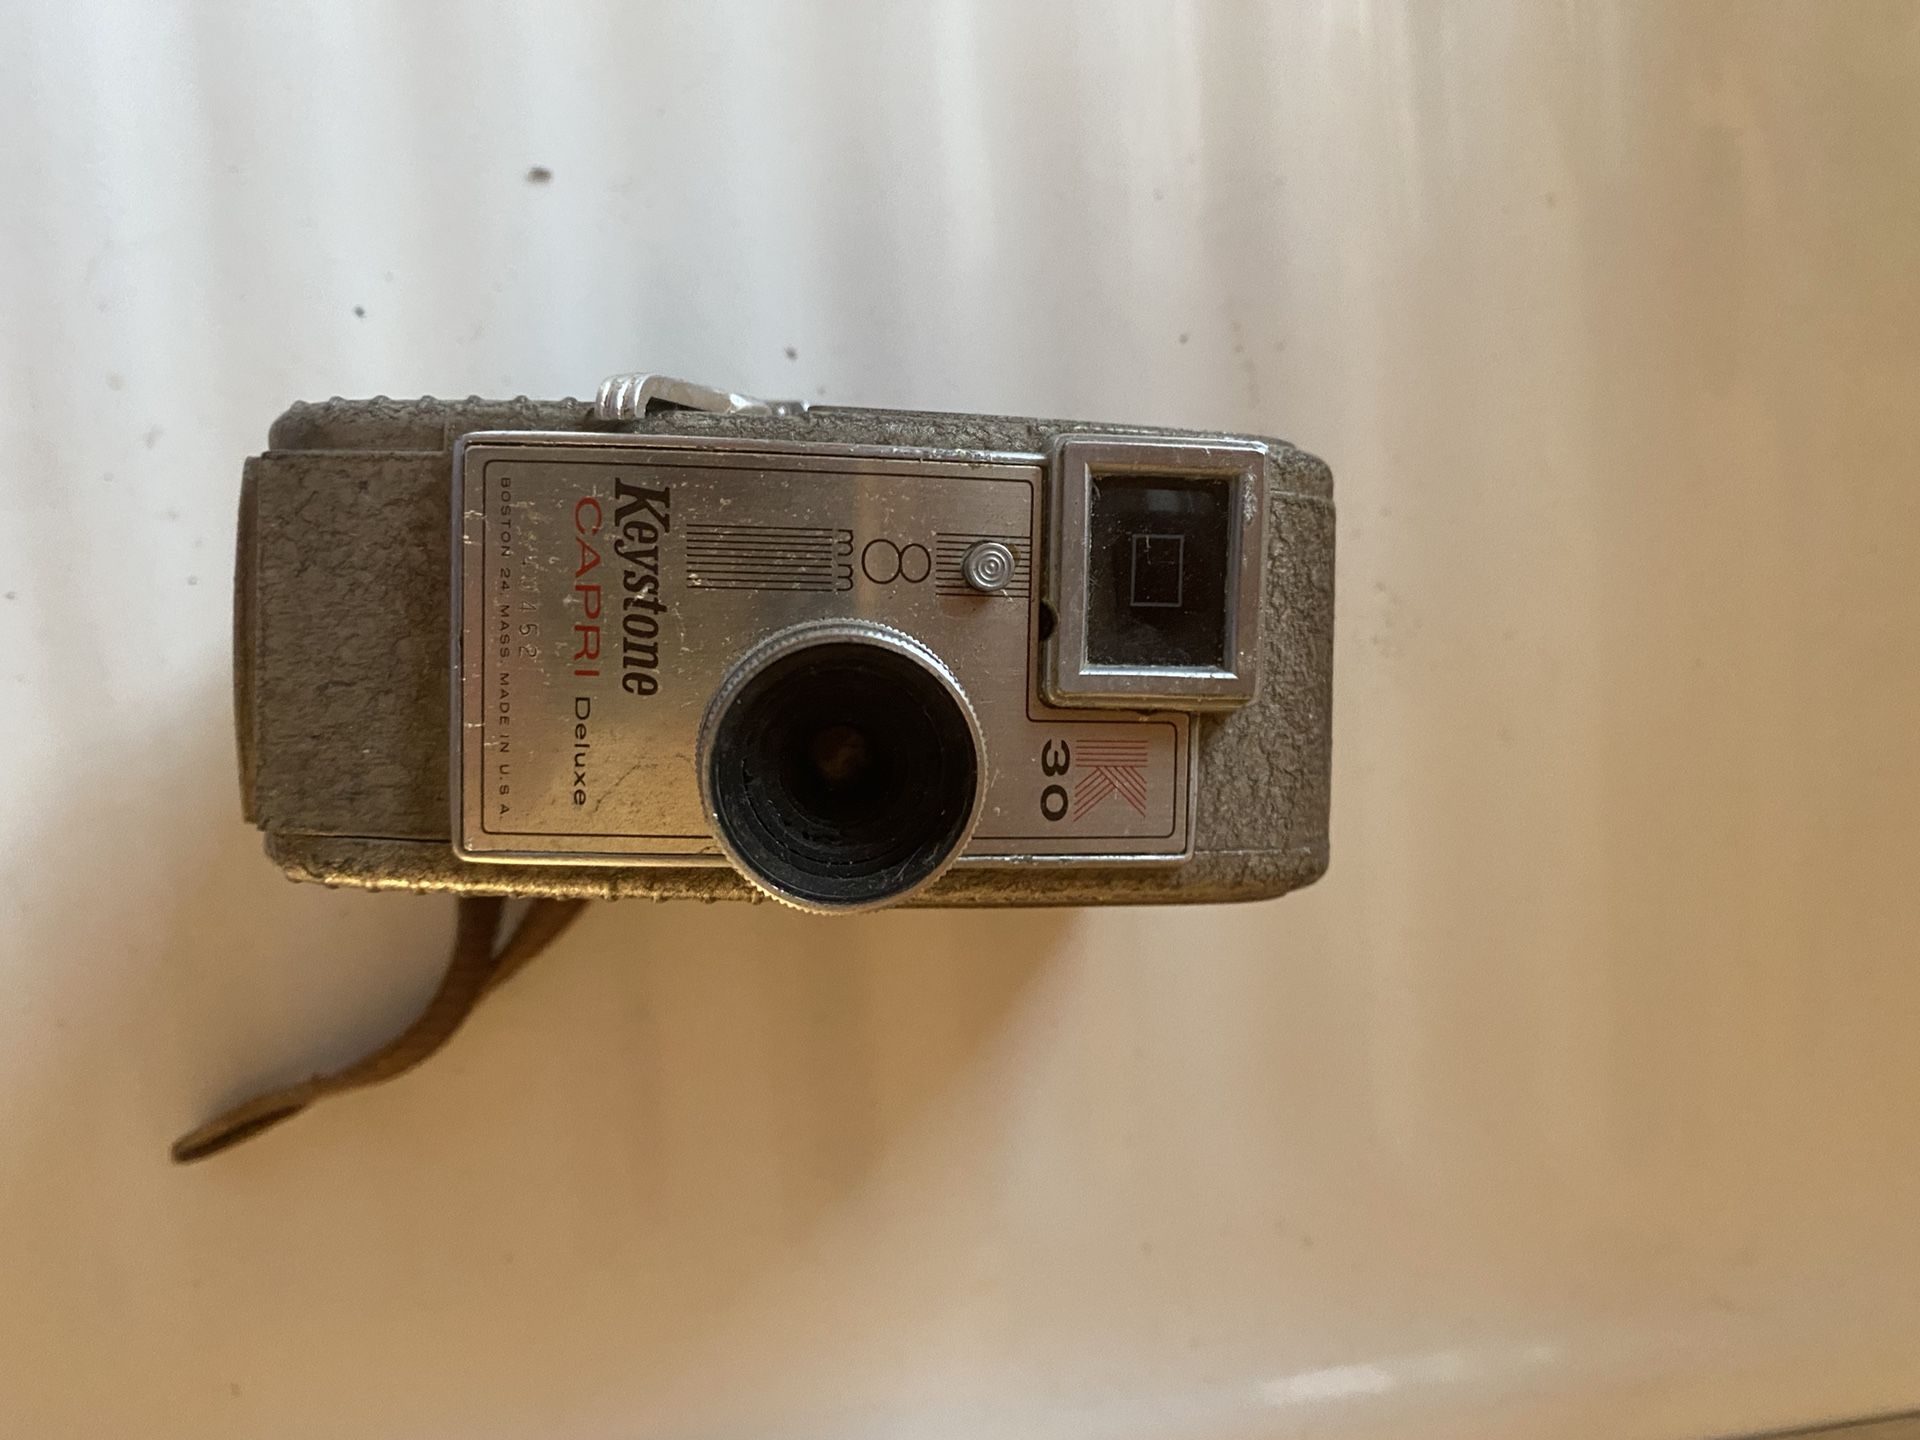 Antique Video Camera